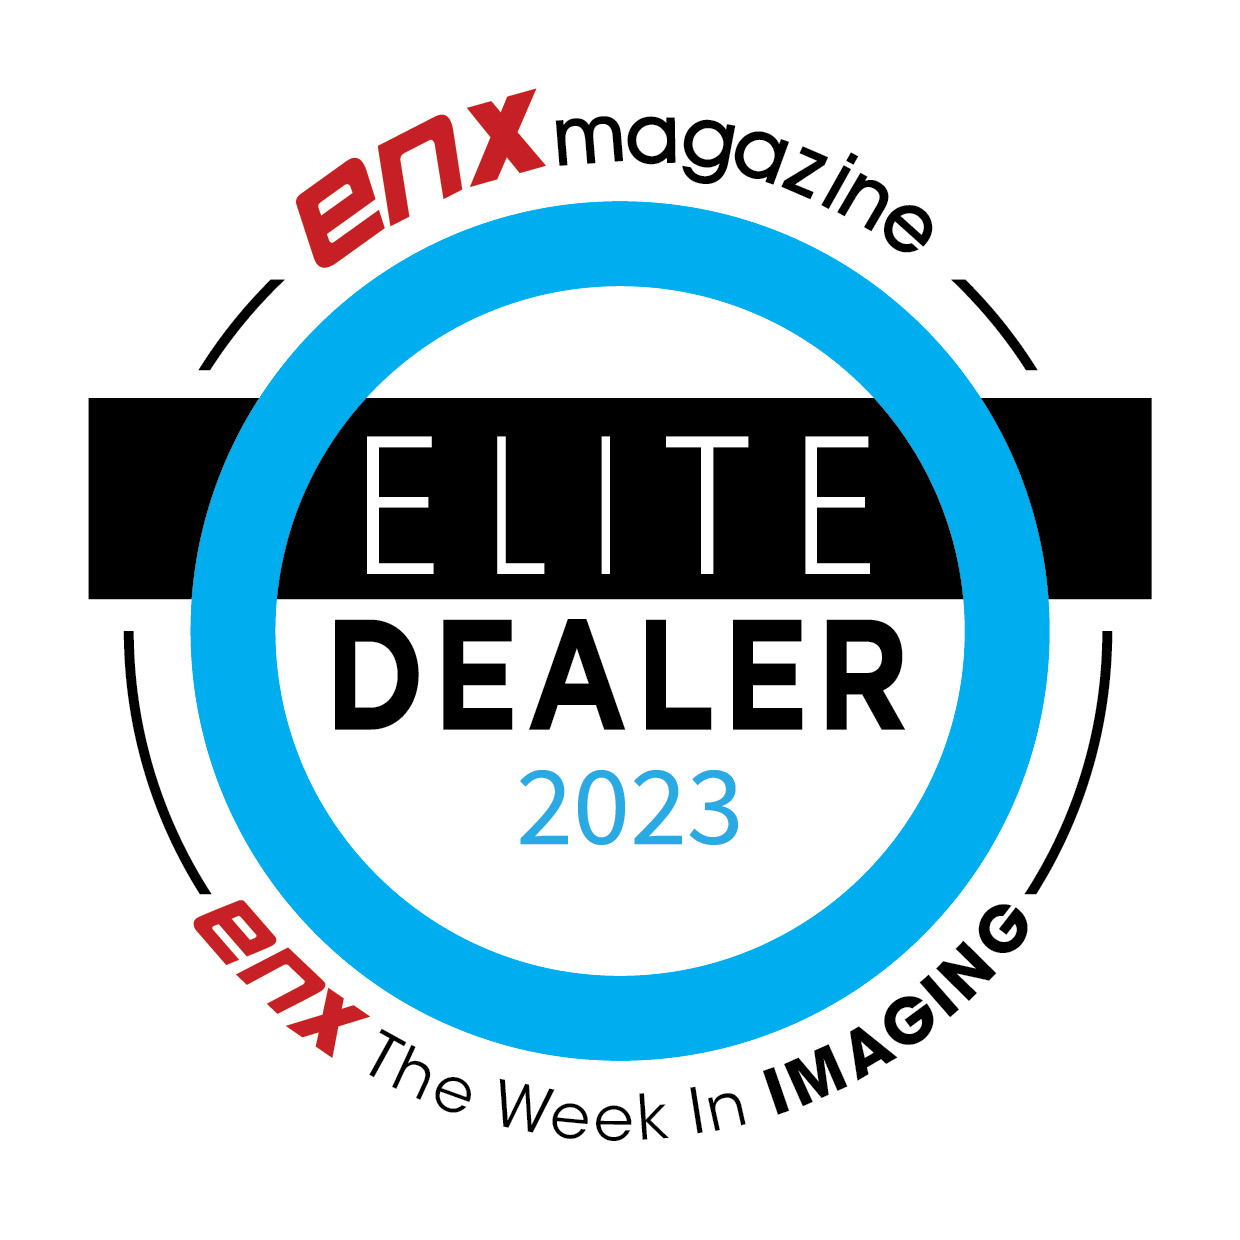 The logo for the Elite Dealer 2023 Award from ENX Magazine